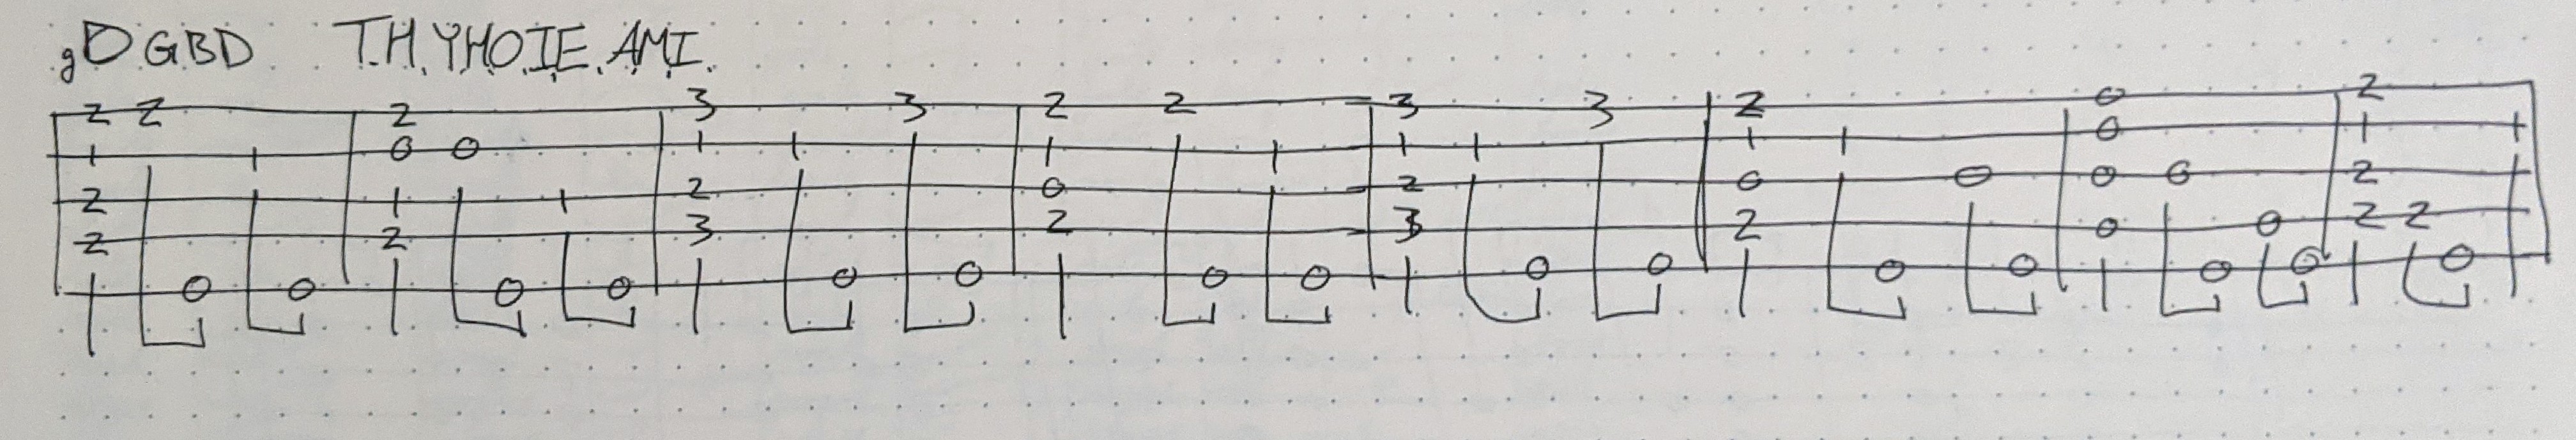 handwritten tablature